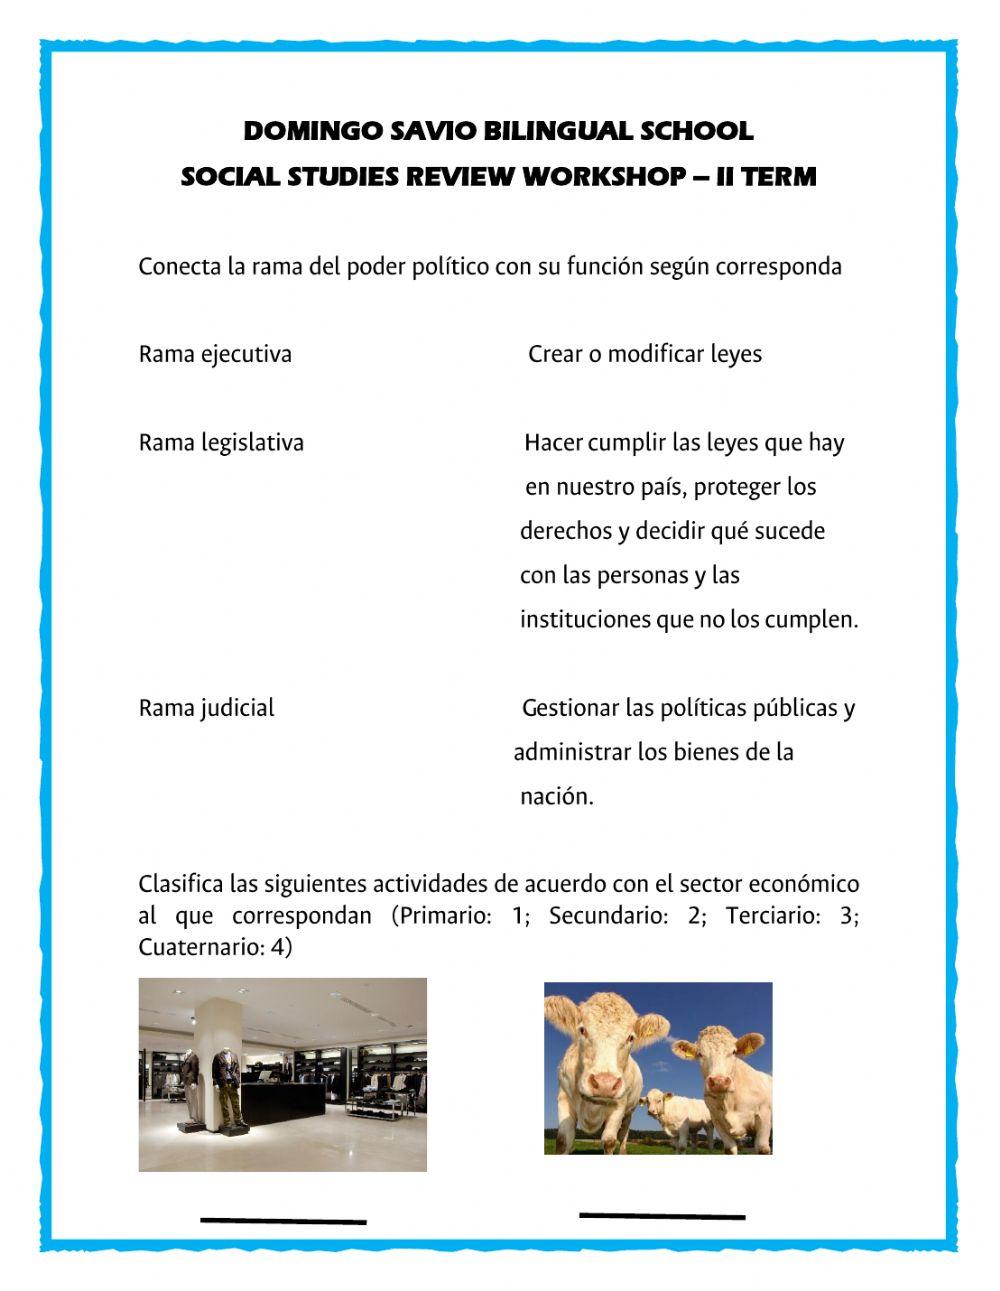 Social studies review workshop ii term